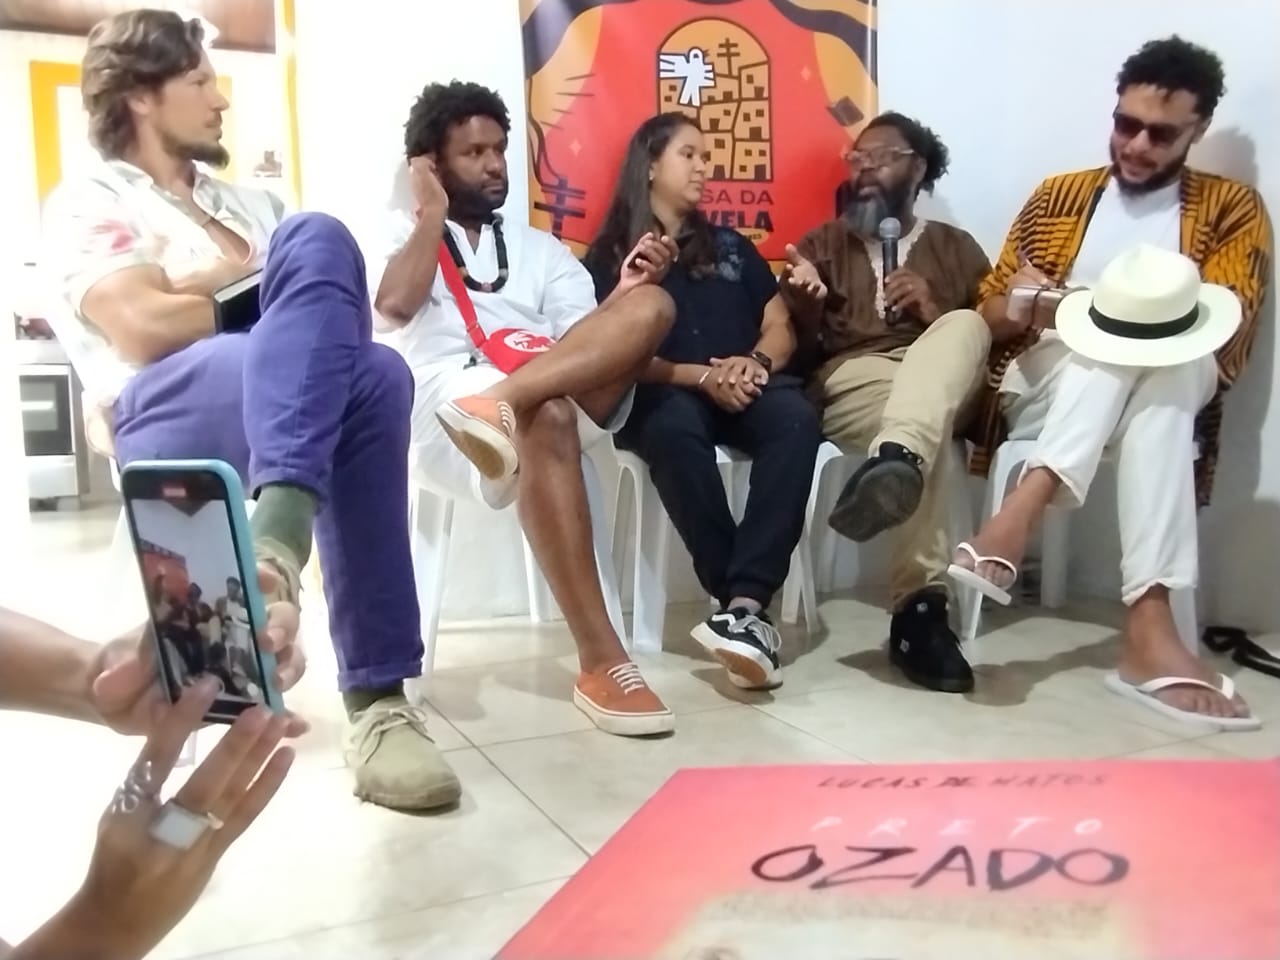 Casa da Favela discute futuro das quebradas com coletivos literários